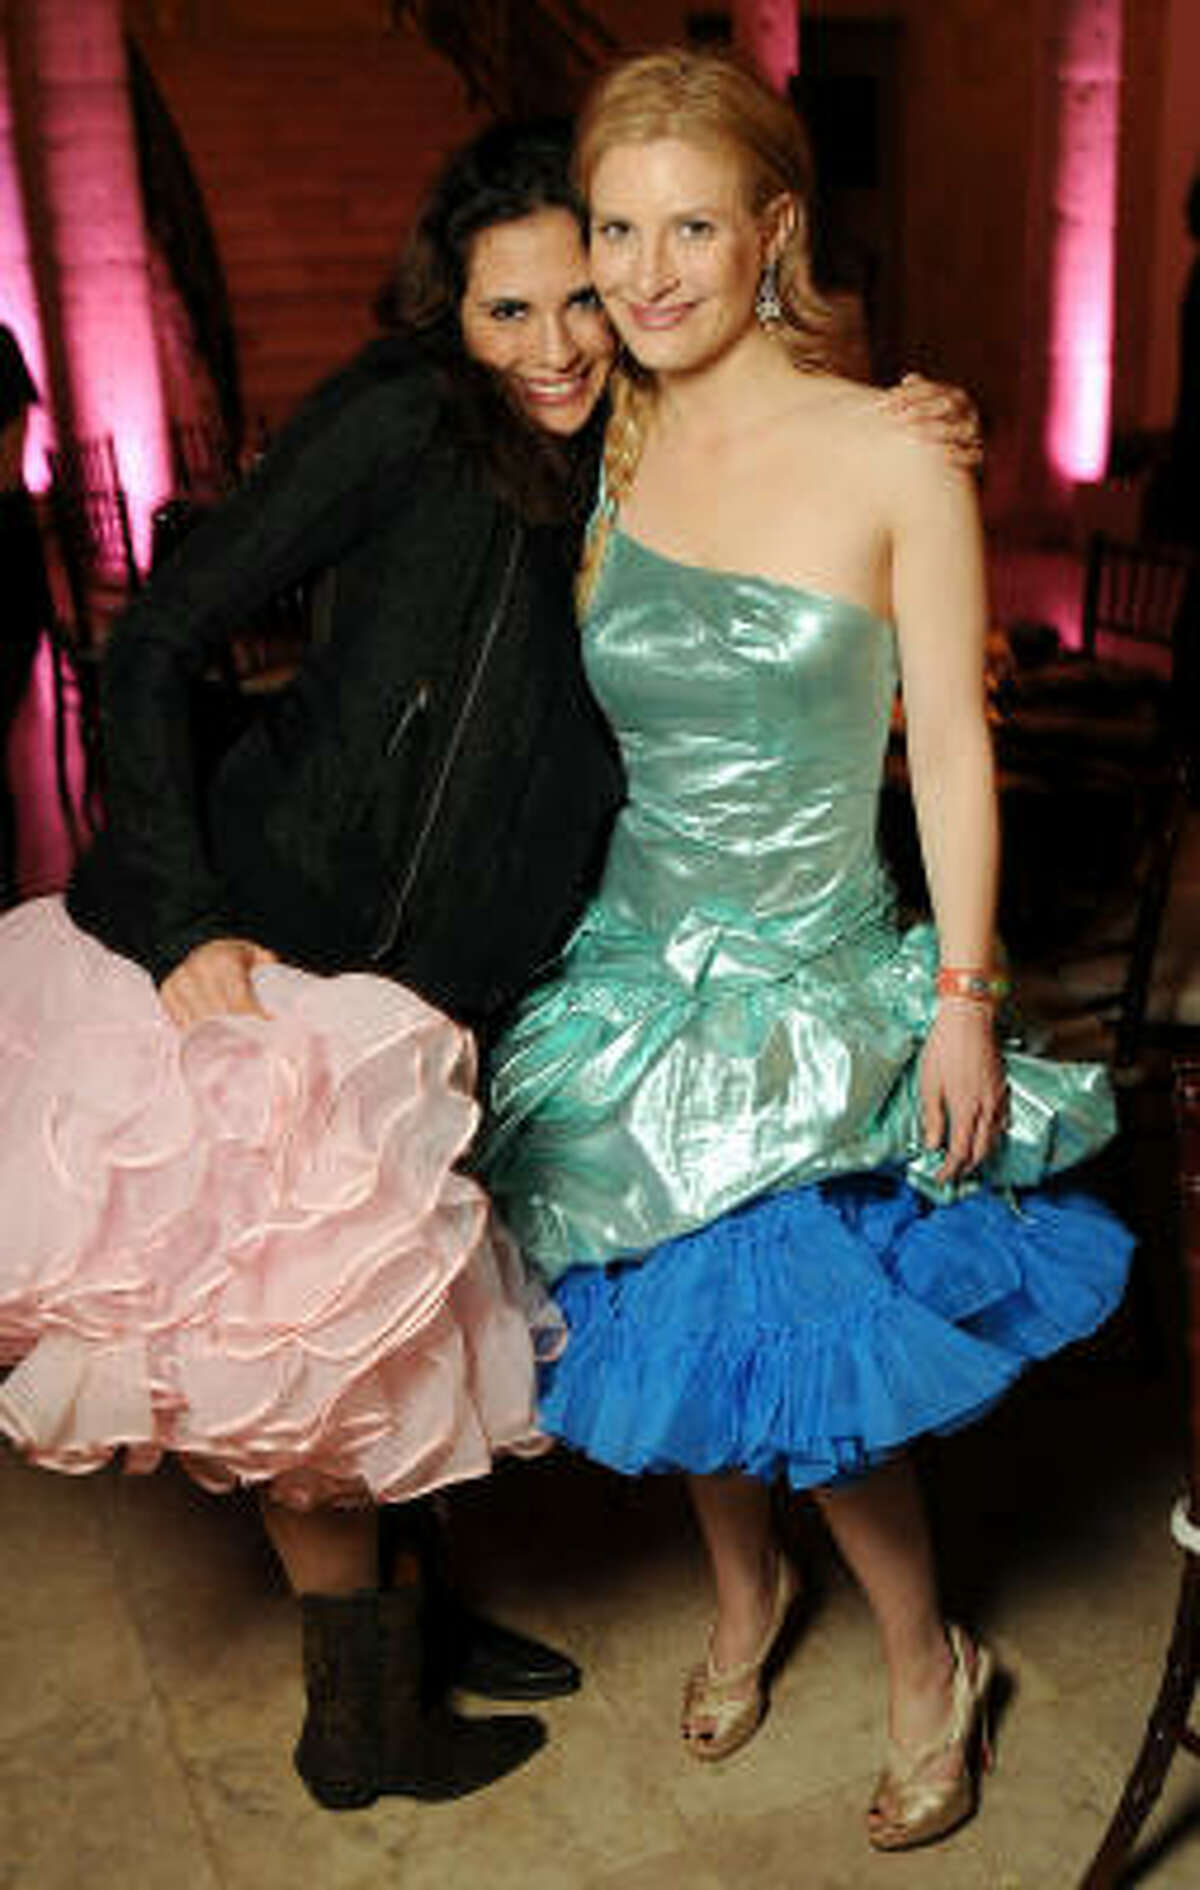 Amy Molina and Molly Gochman at the Debutantes Run Wild Gala